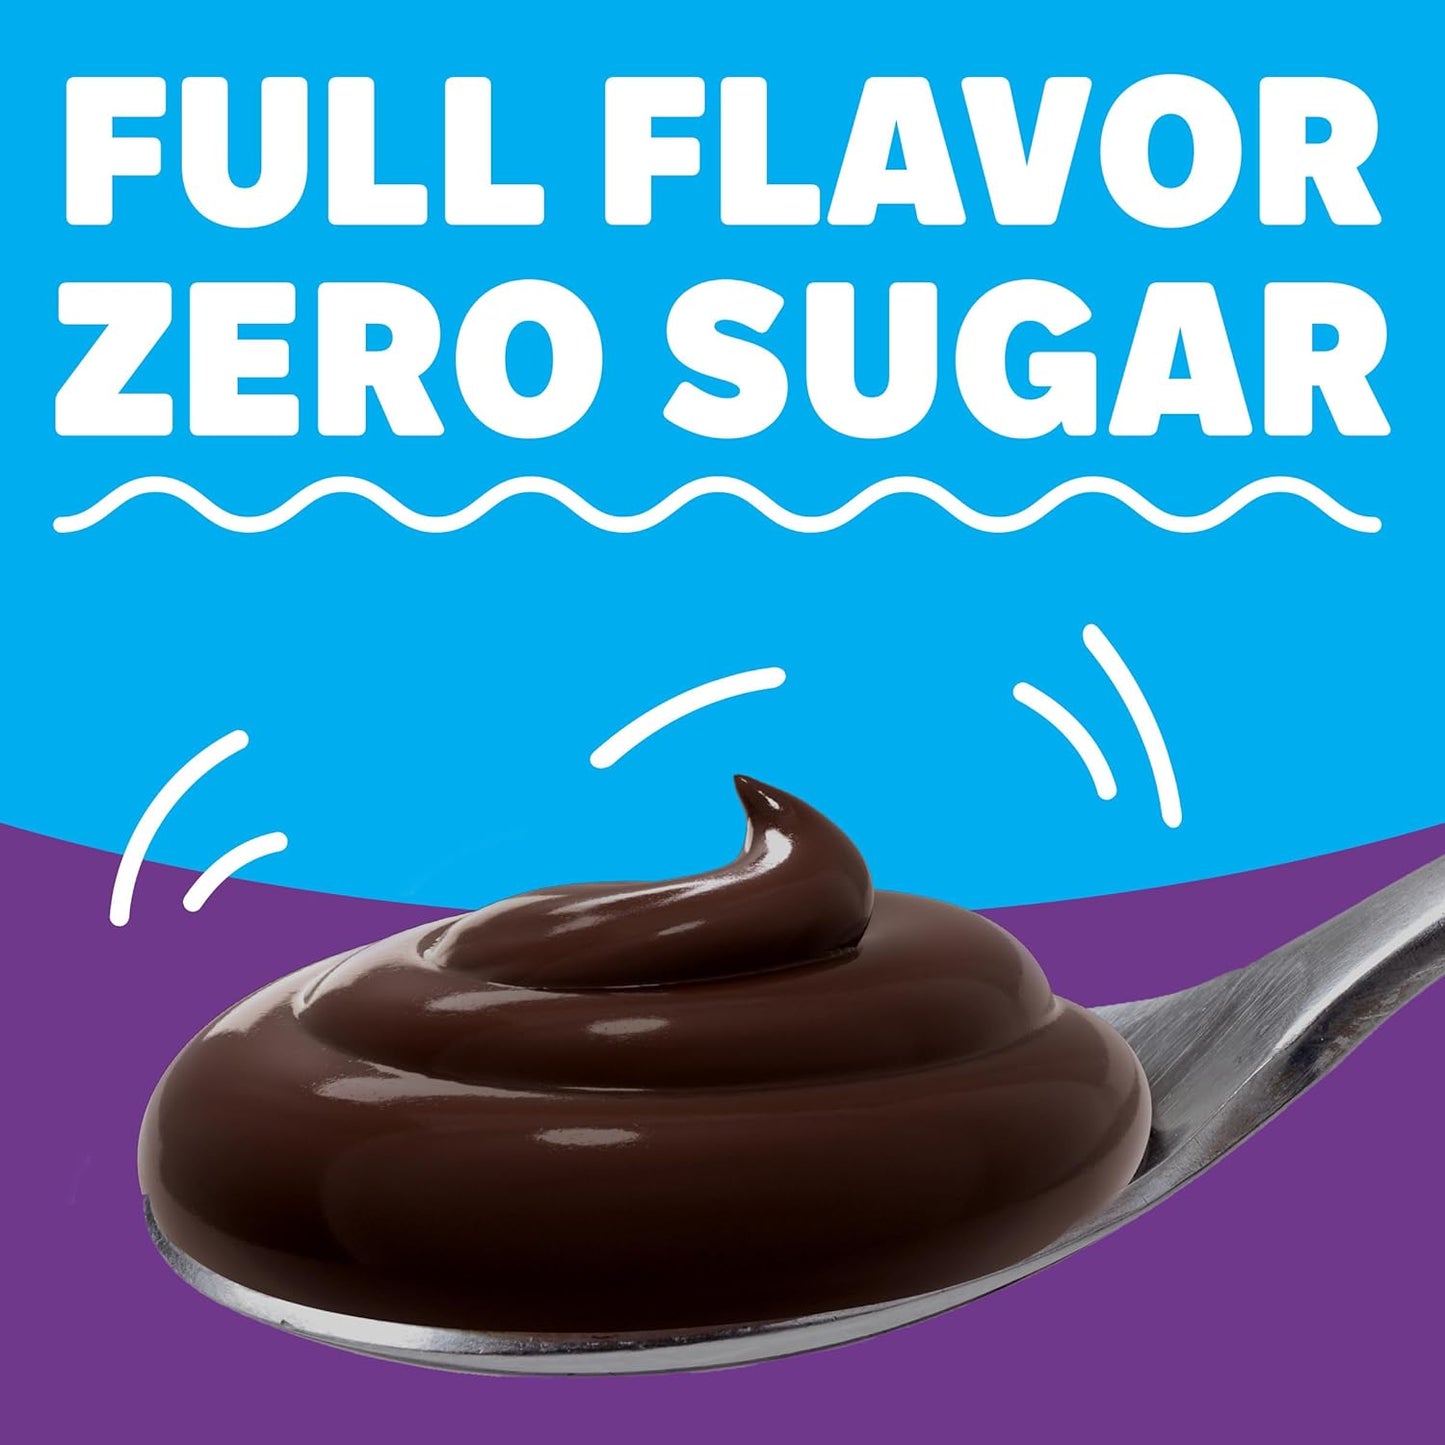 Jello Sugar Free Chocolate Fudge Pudding Mix 1.4oz Box - Jello